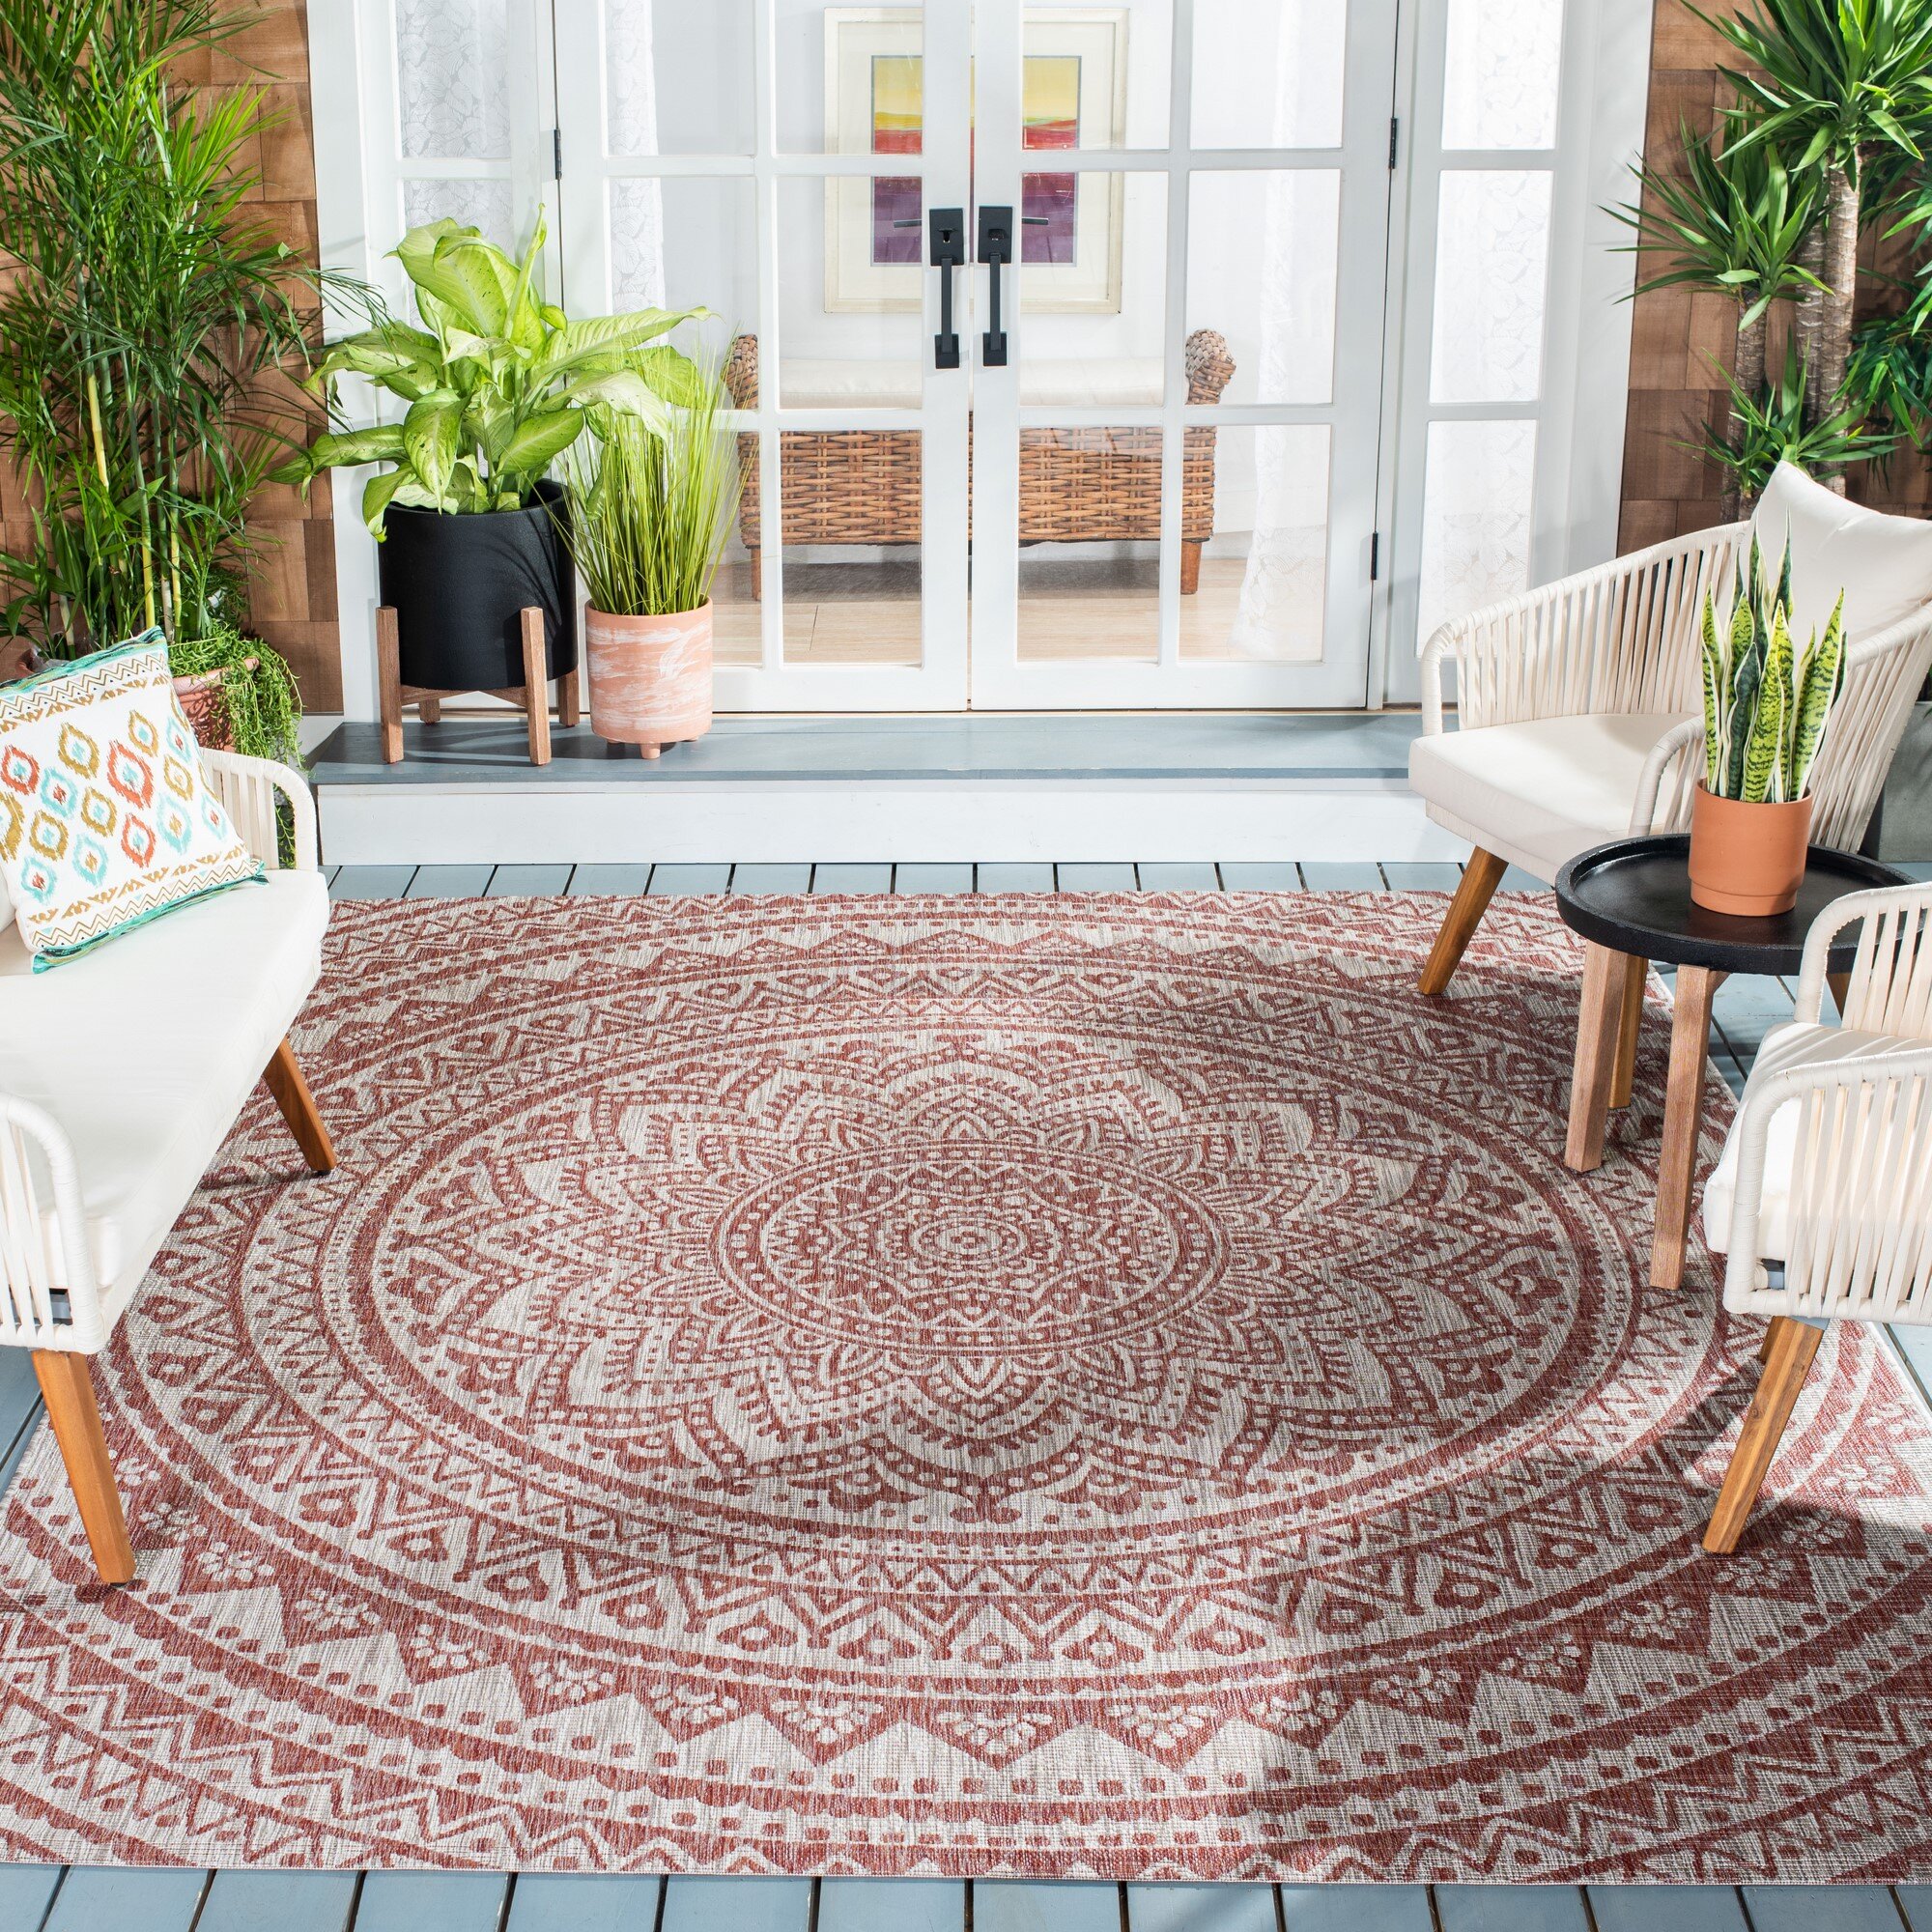 Indian rugs Bedroom rugs Outdoor rugs Hand block printed rugs 5x8 vintage rug Cotton rugs Living room rugs